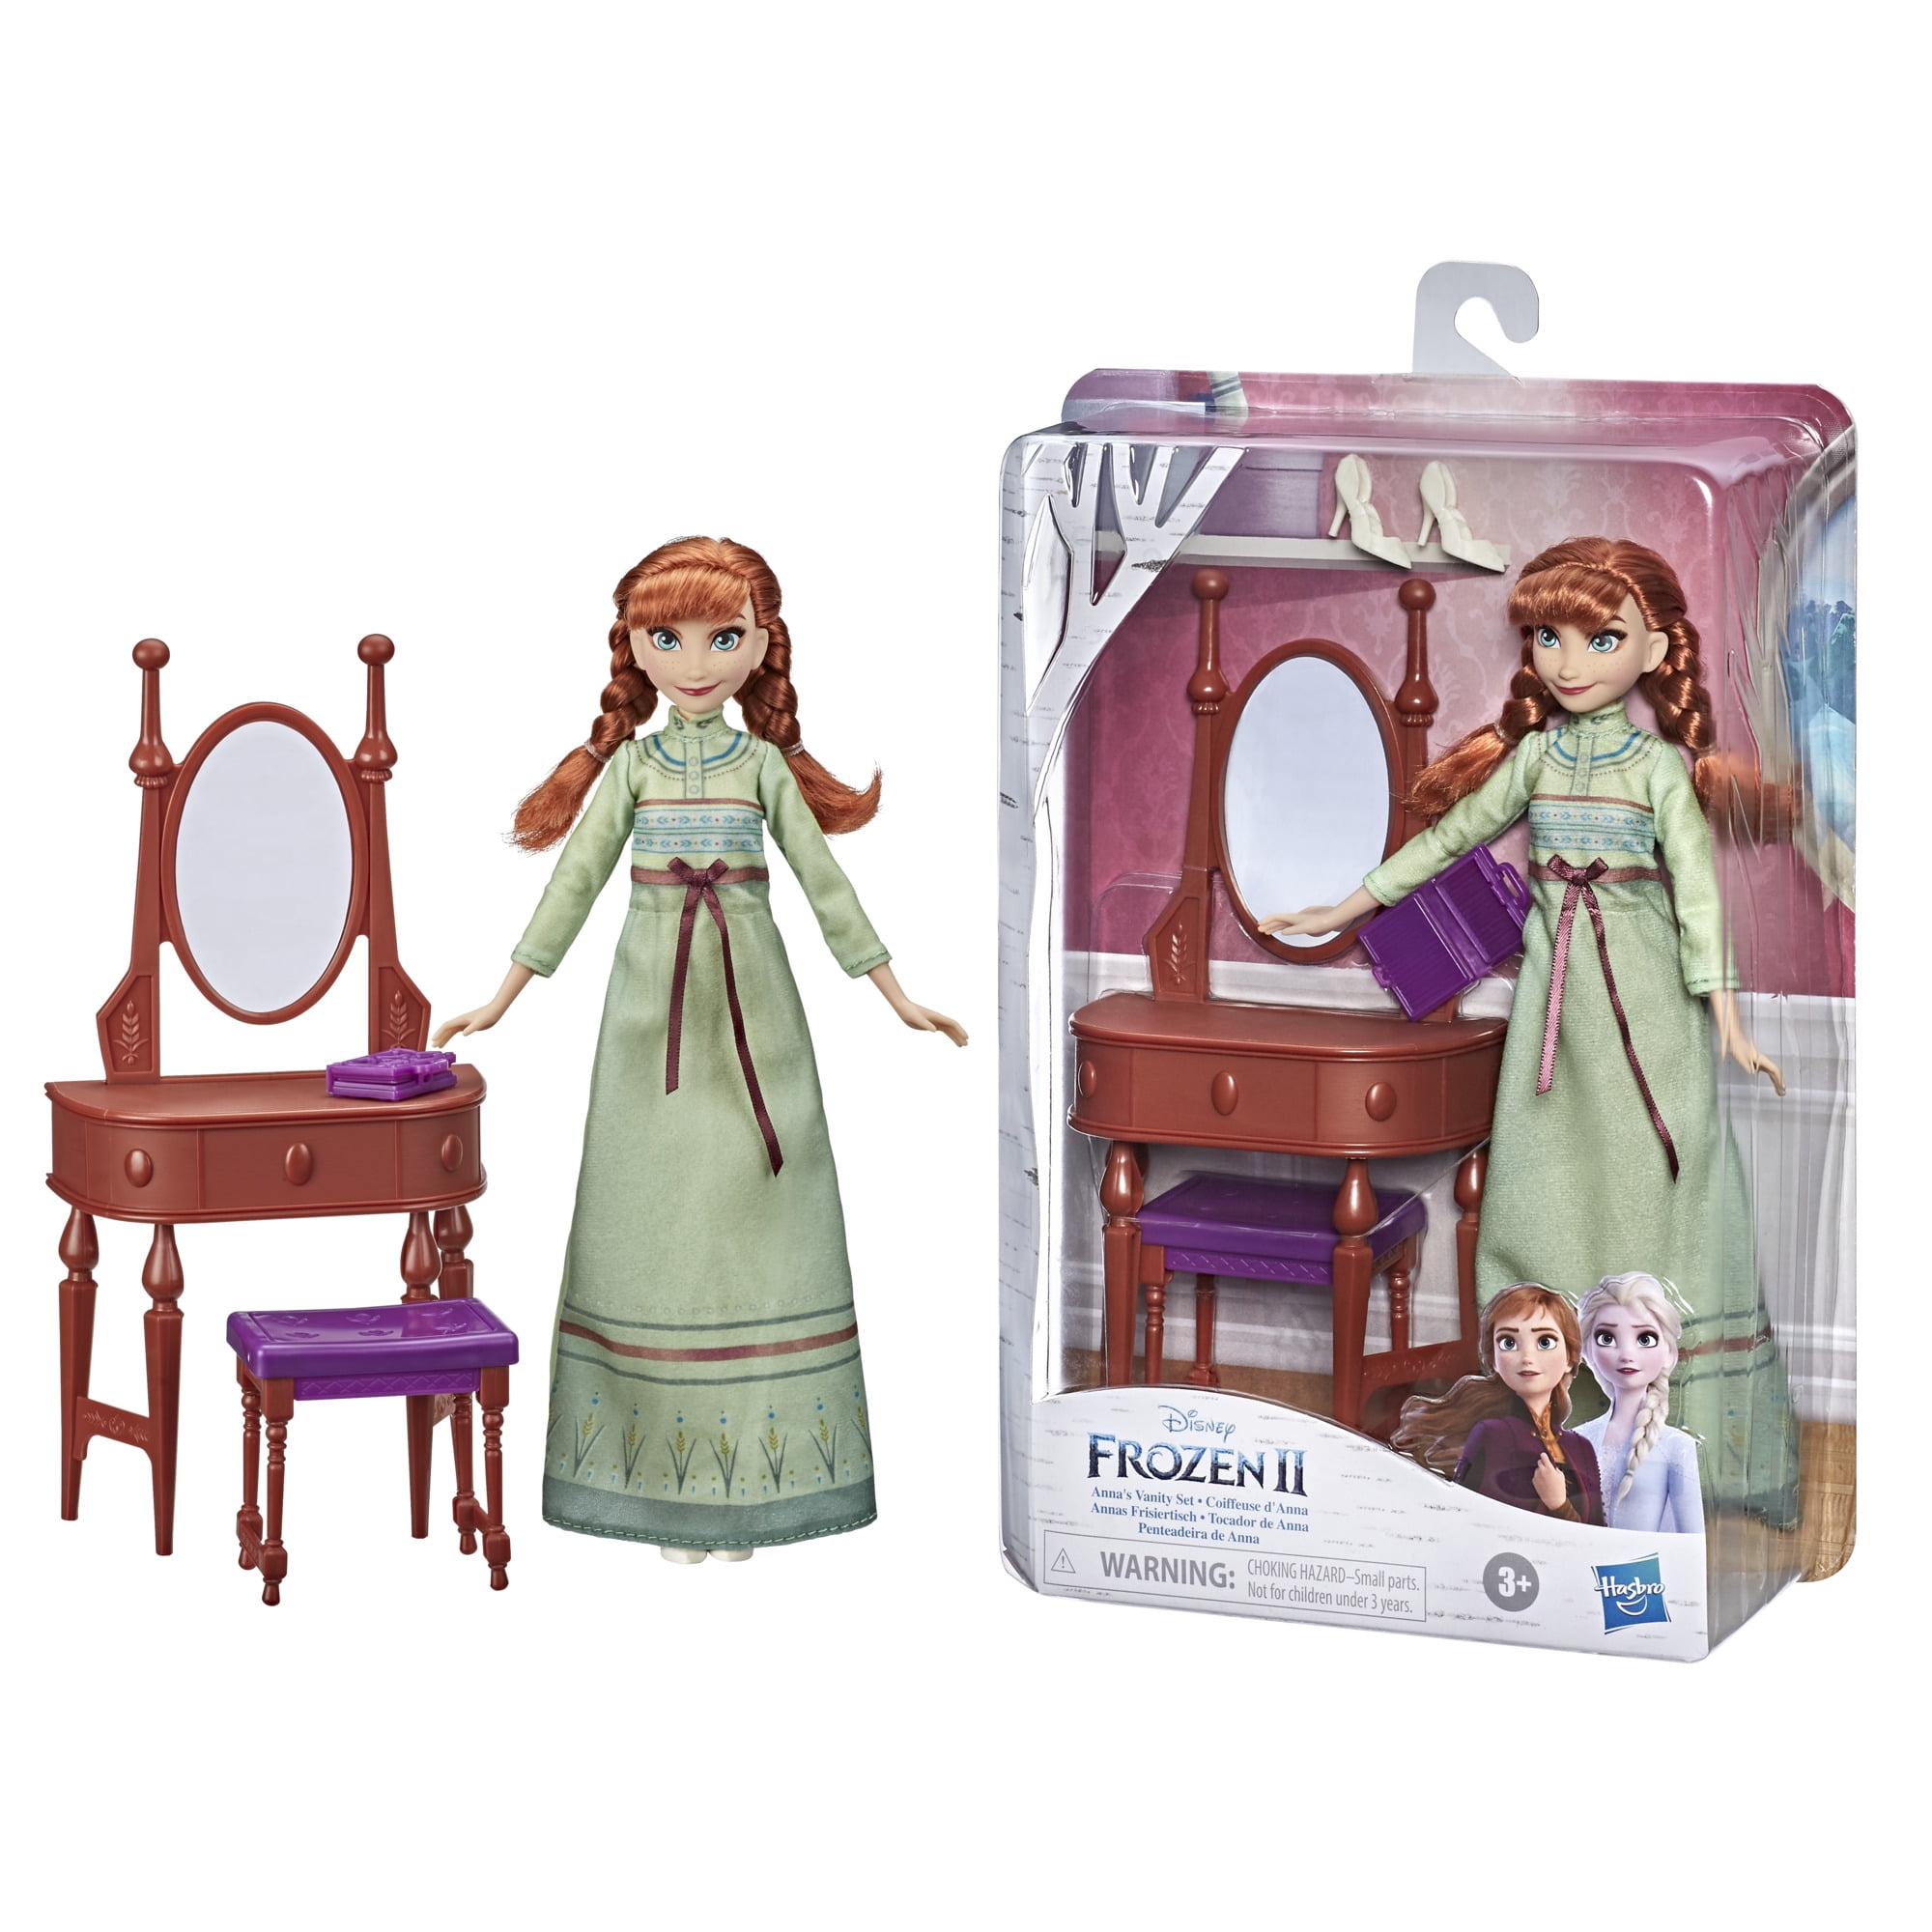 Frozen 2 Anna S Vanity Set Doll With, Disney Frozen 2 Elsa Vanity Playset